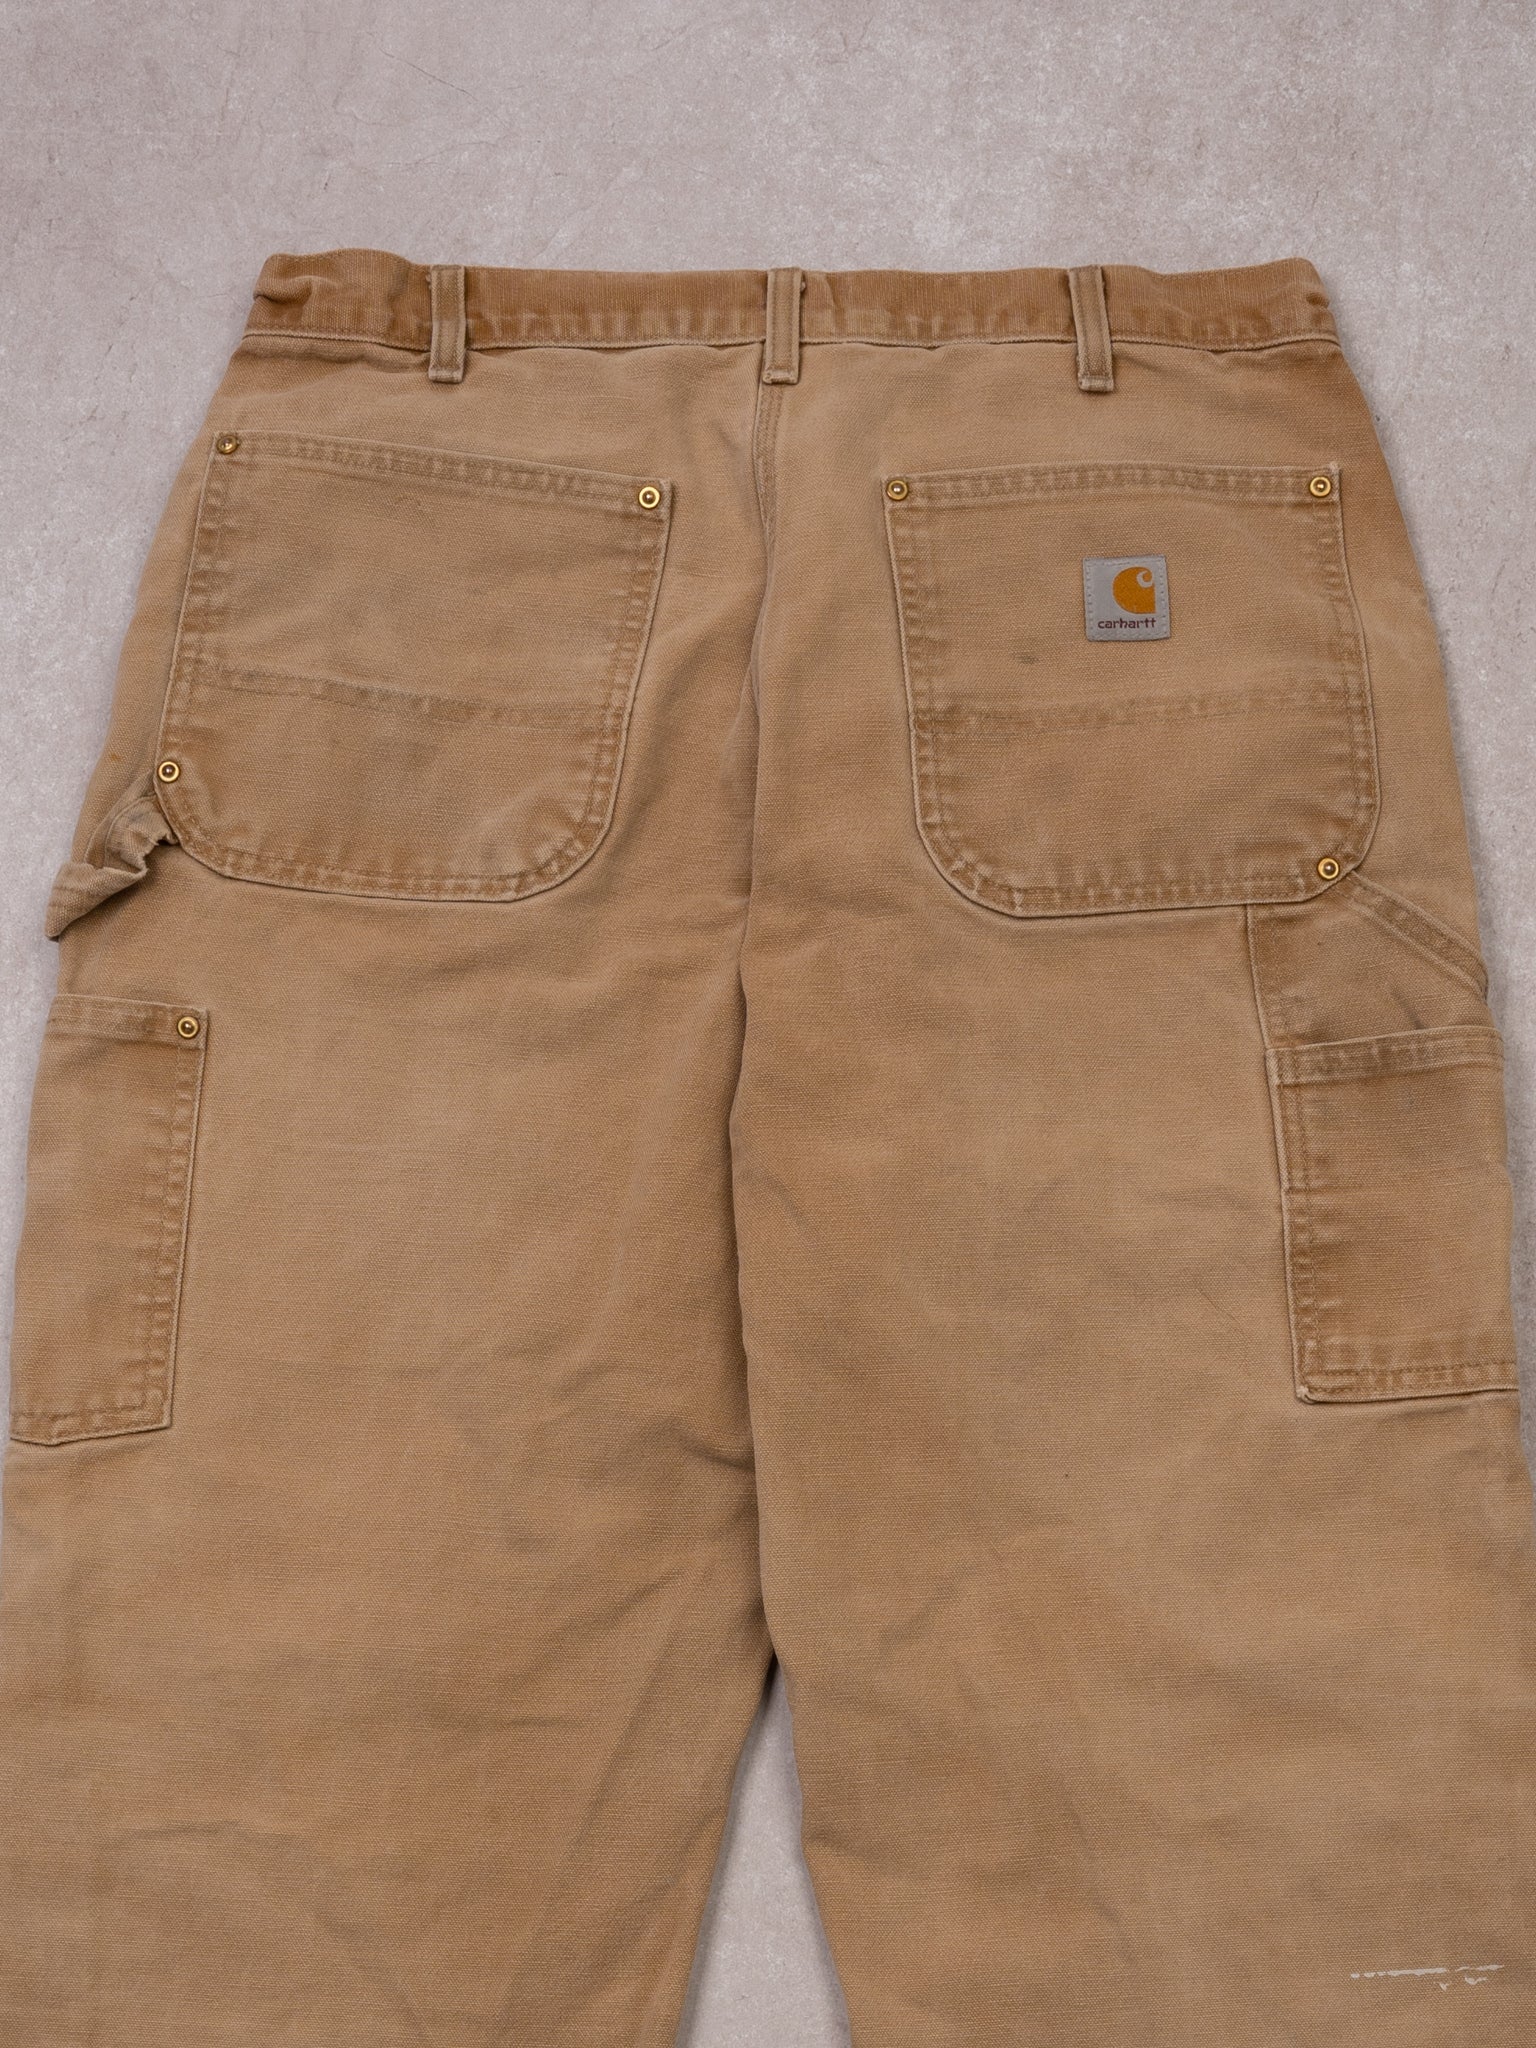 Vintage 90s Beige Carhartt Dungaree Double Knee Cargo Pants (32 x 30)